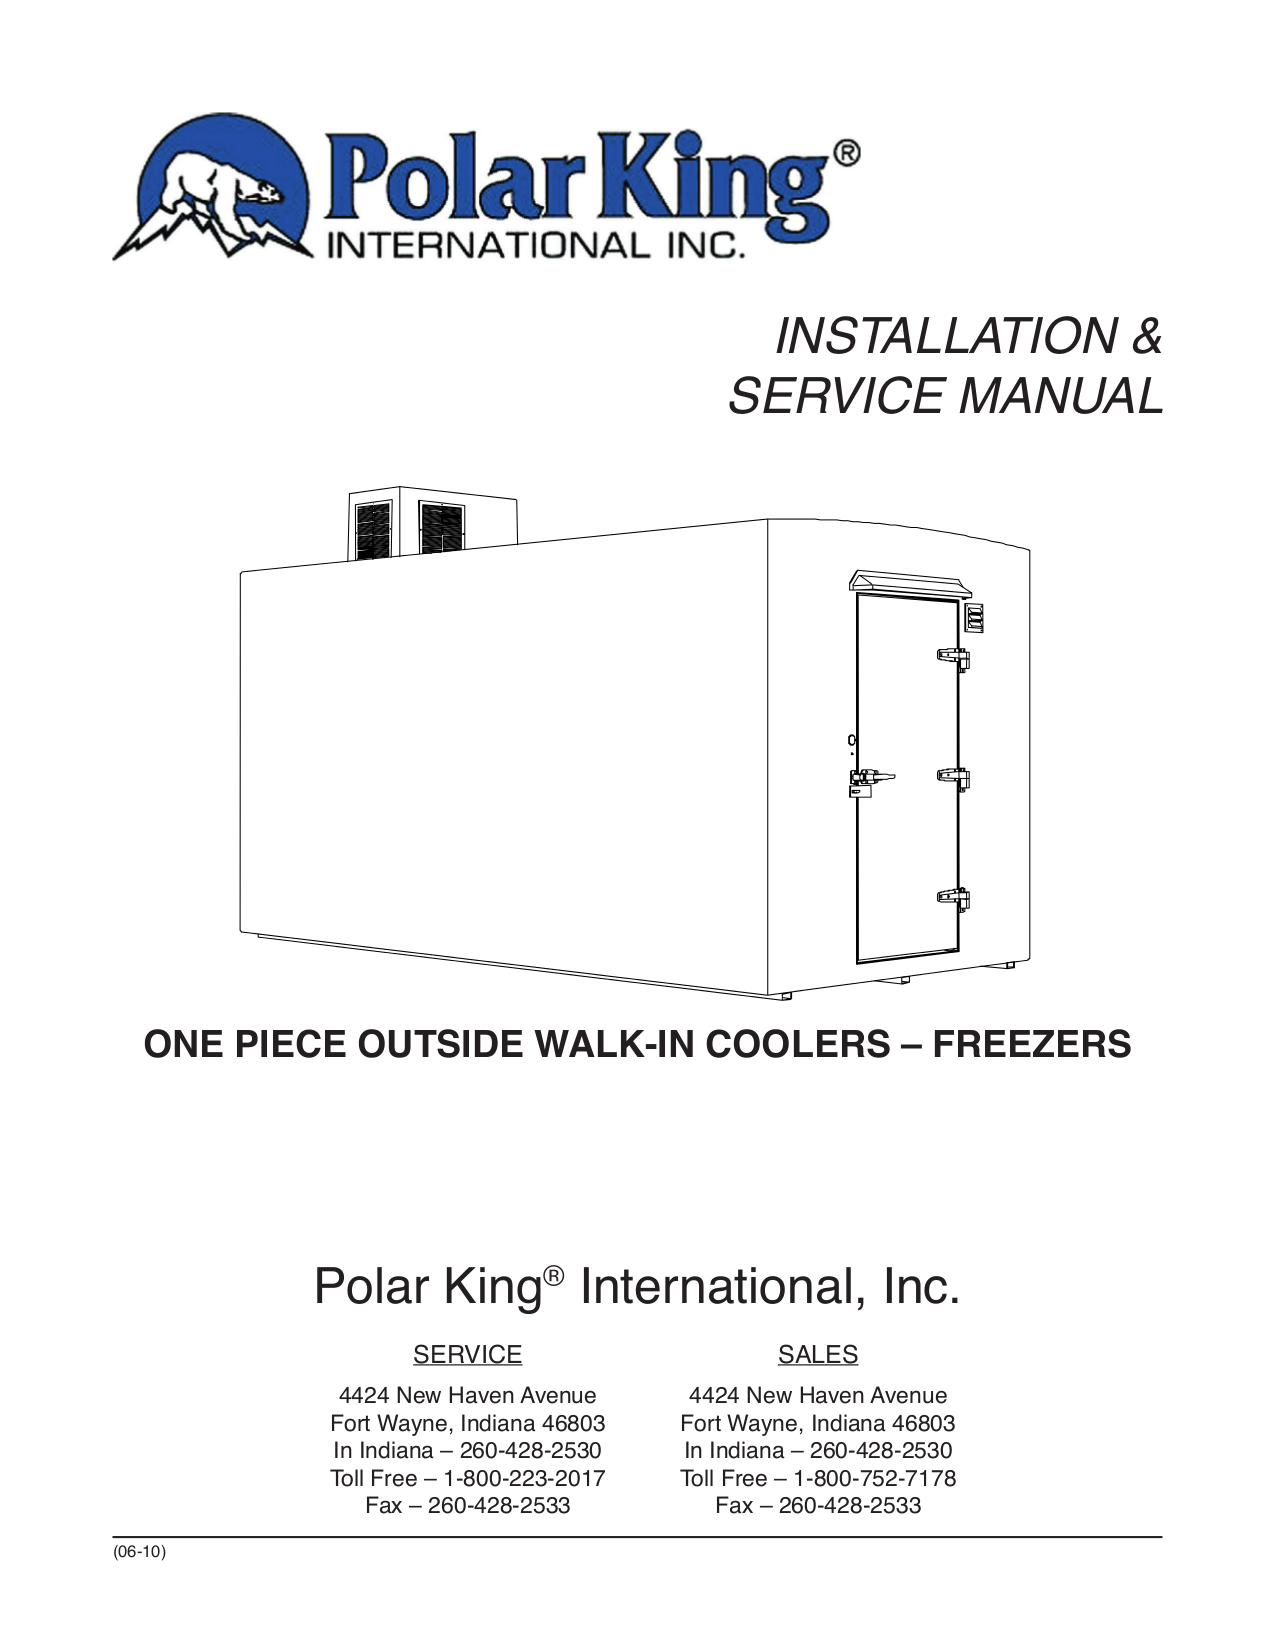 pdf for True Refrigerator TS-28-PT manual